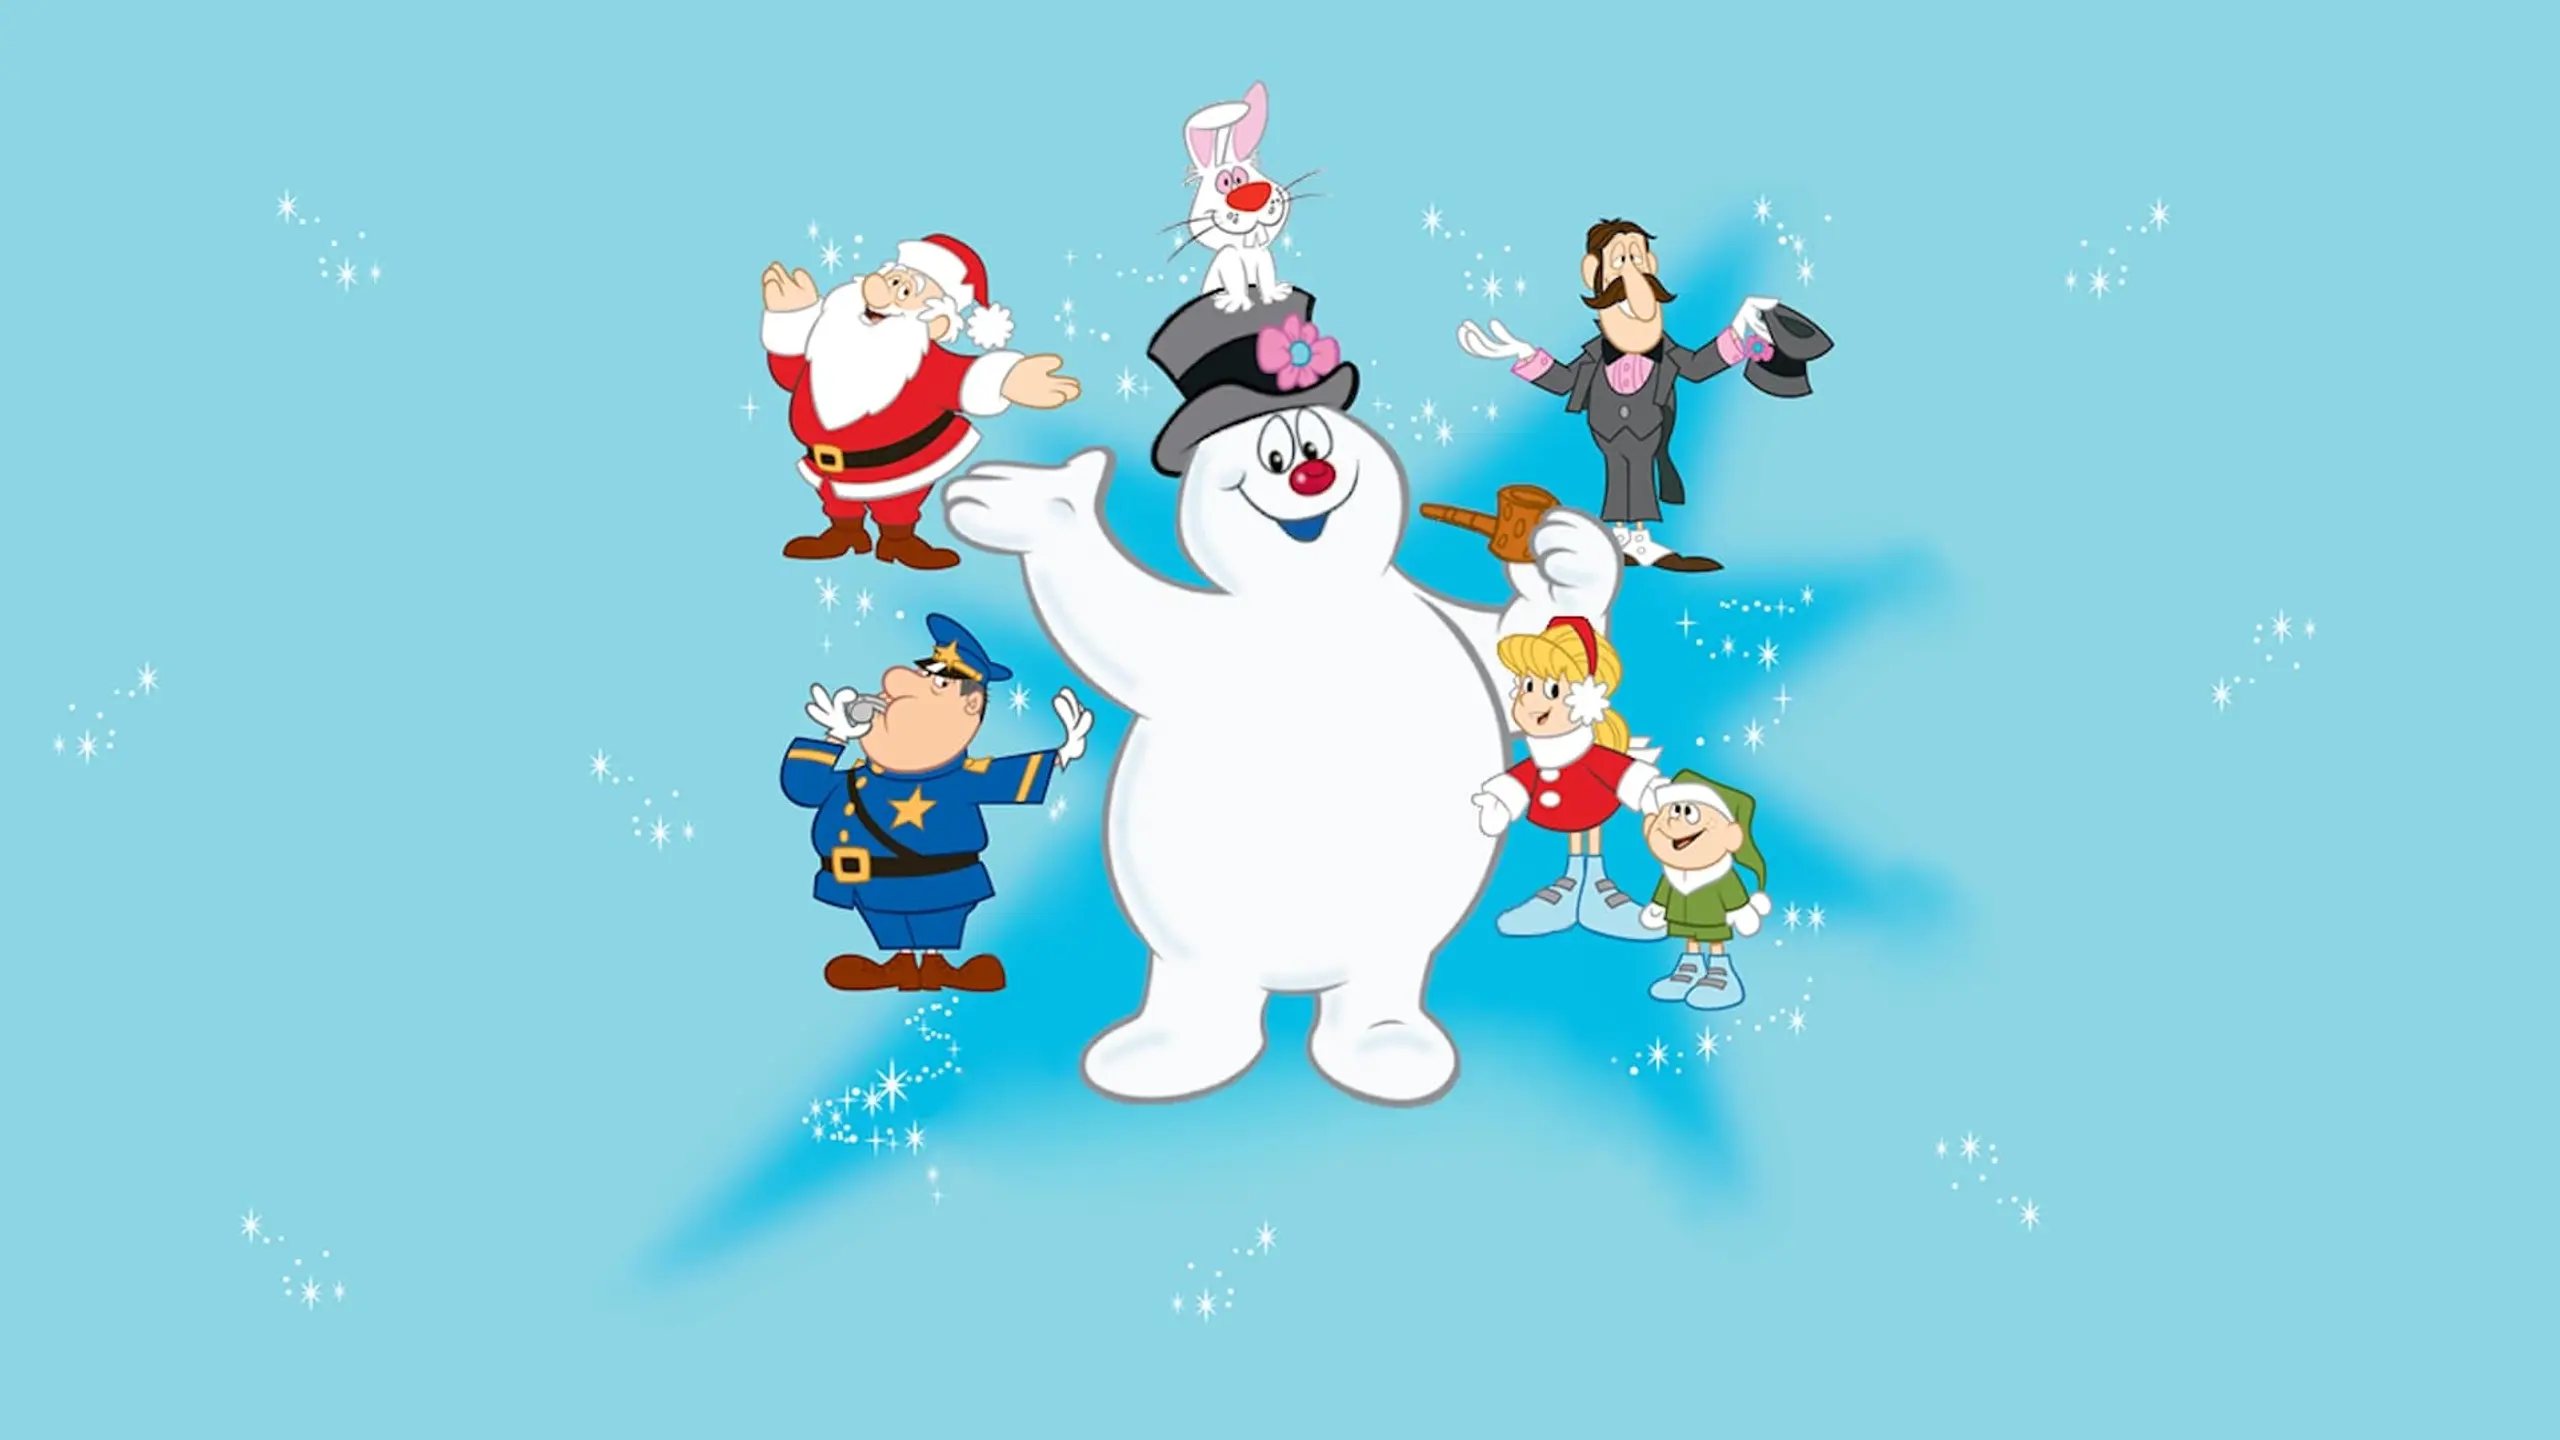 Frosty, der Schneemann